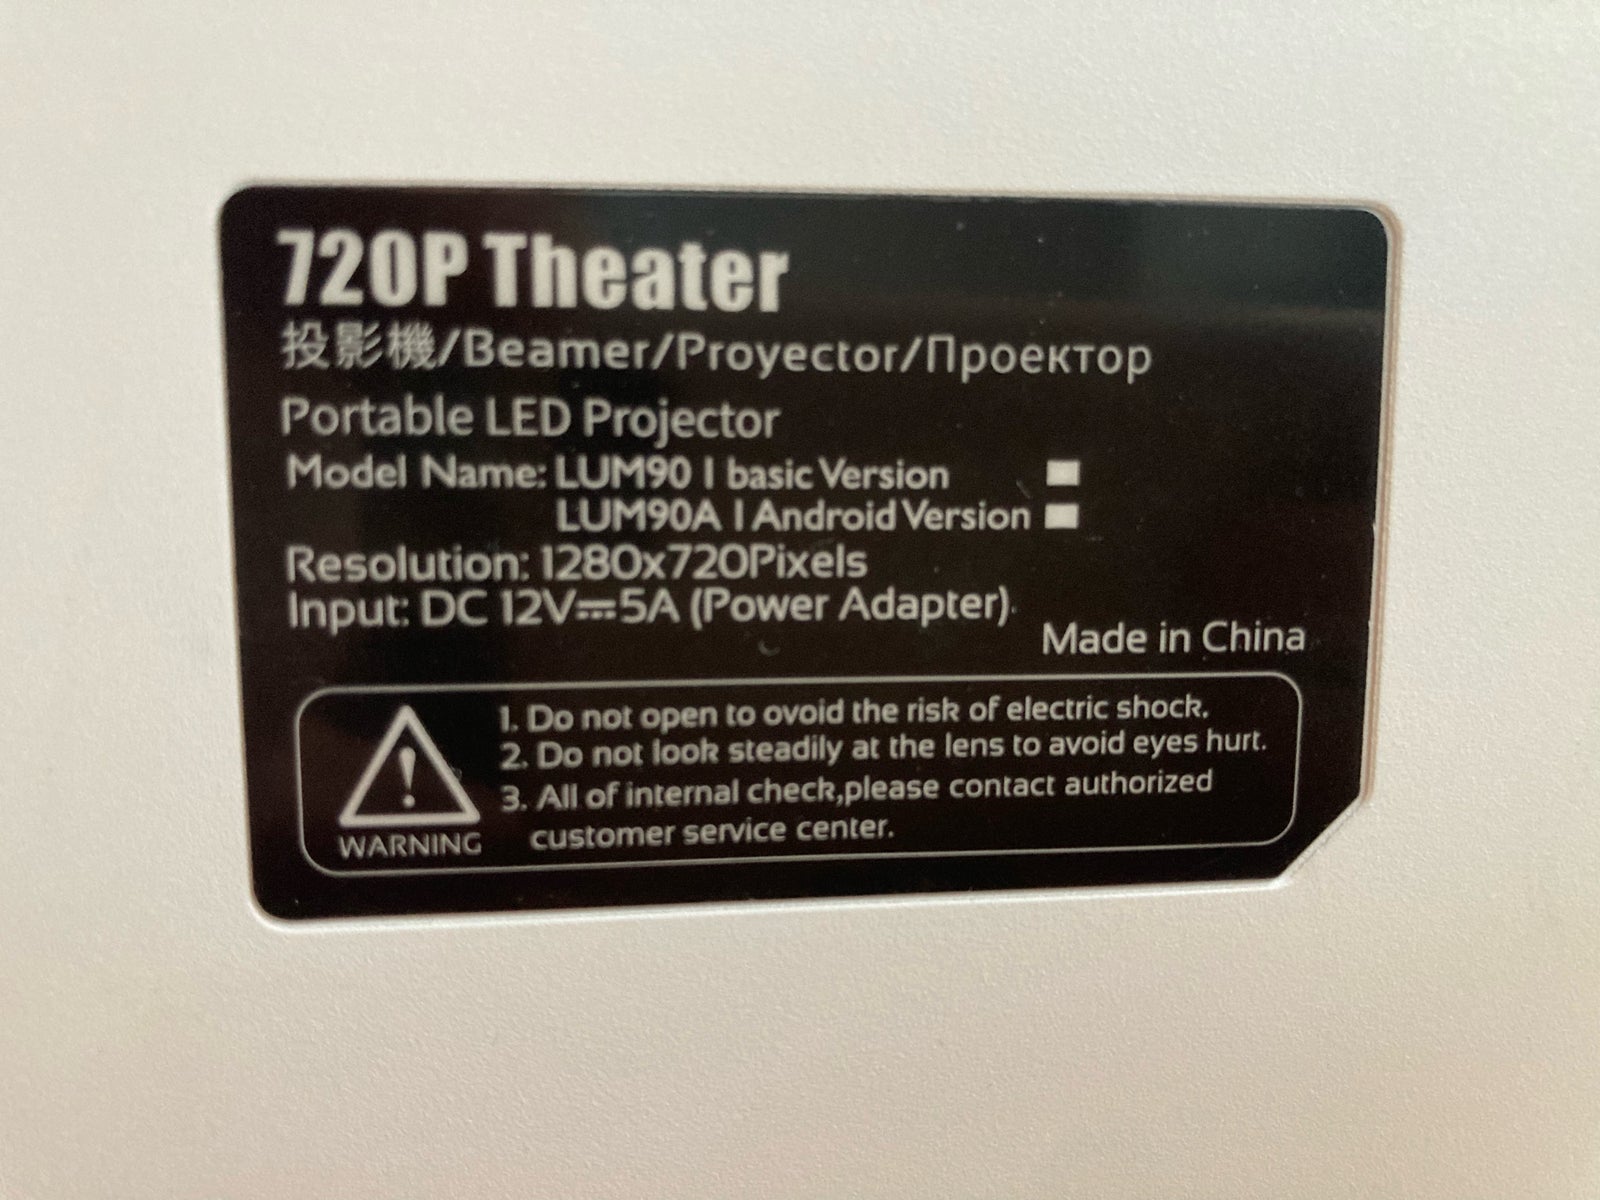 Projektor, 720P theater, Perfekt